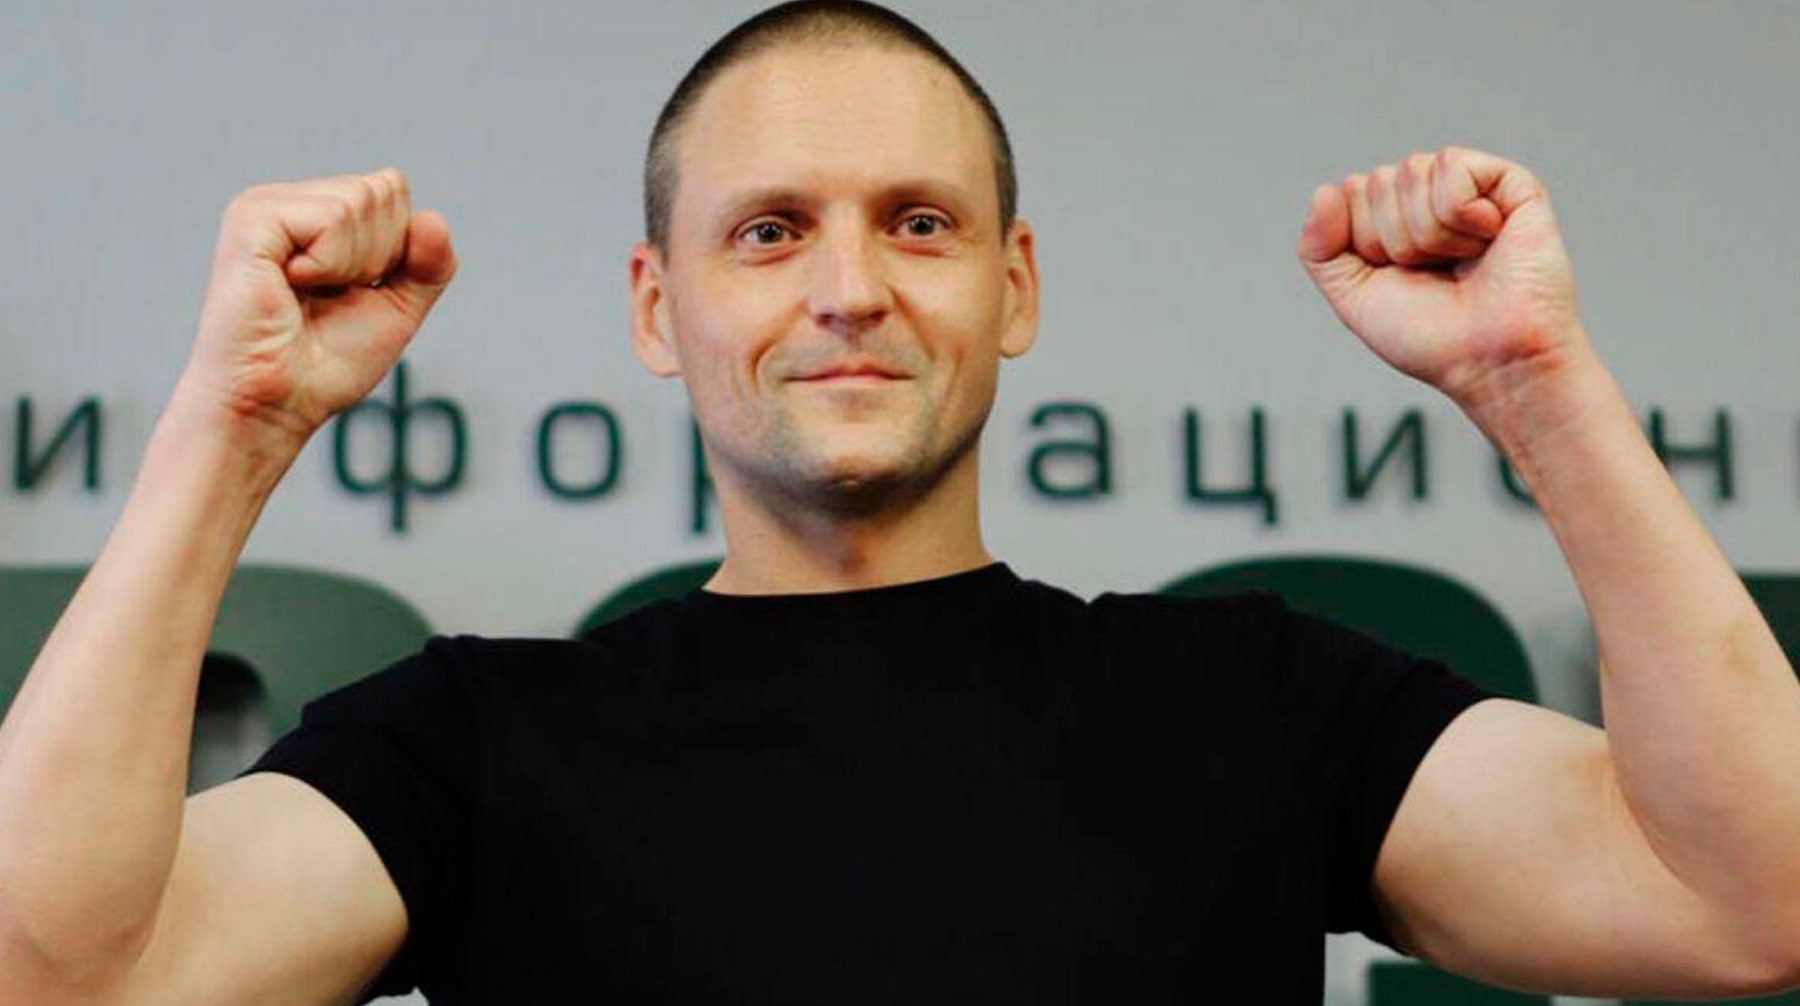 Dailystorm - Удальцов сообщил о своем задержании за «акции в поддержку Хабаровска»